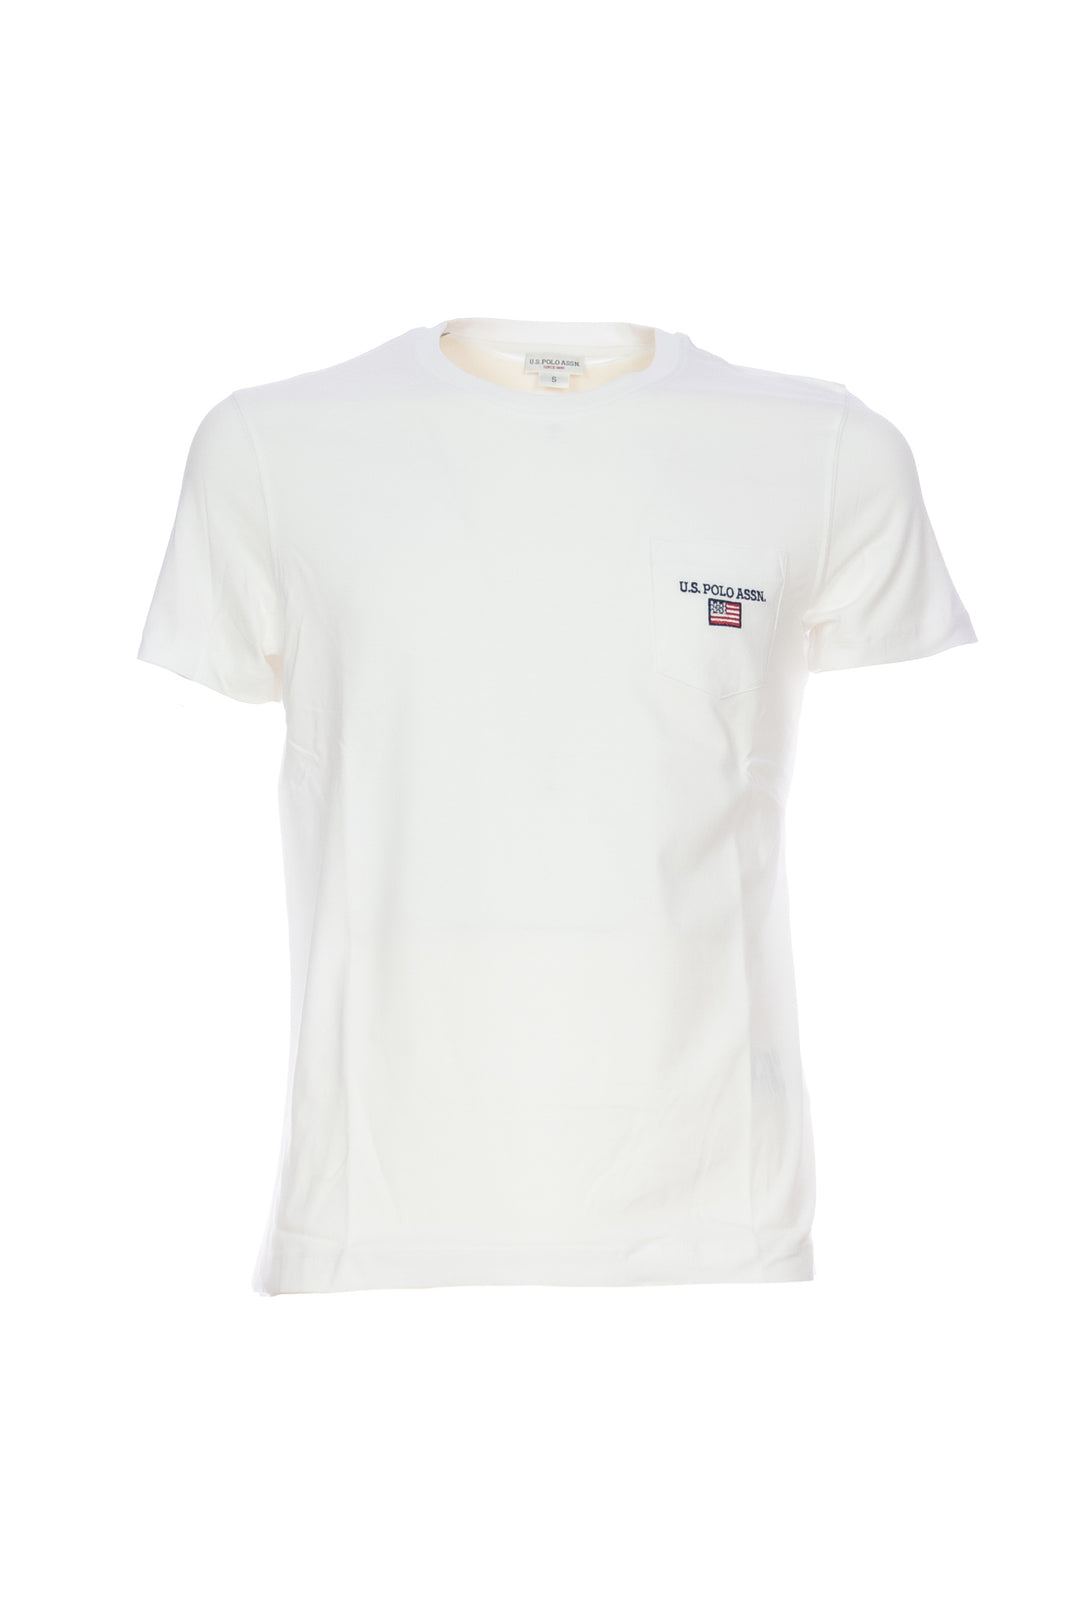 U.S. POLO ASSN. T-shirt bianca in cotone con taschino sul petto - Mancinelli 1954